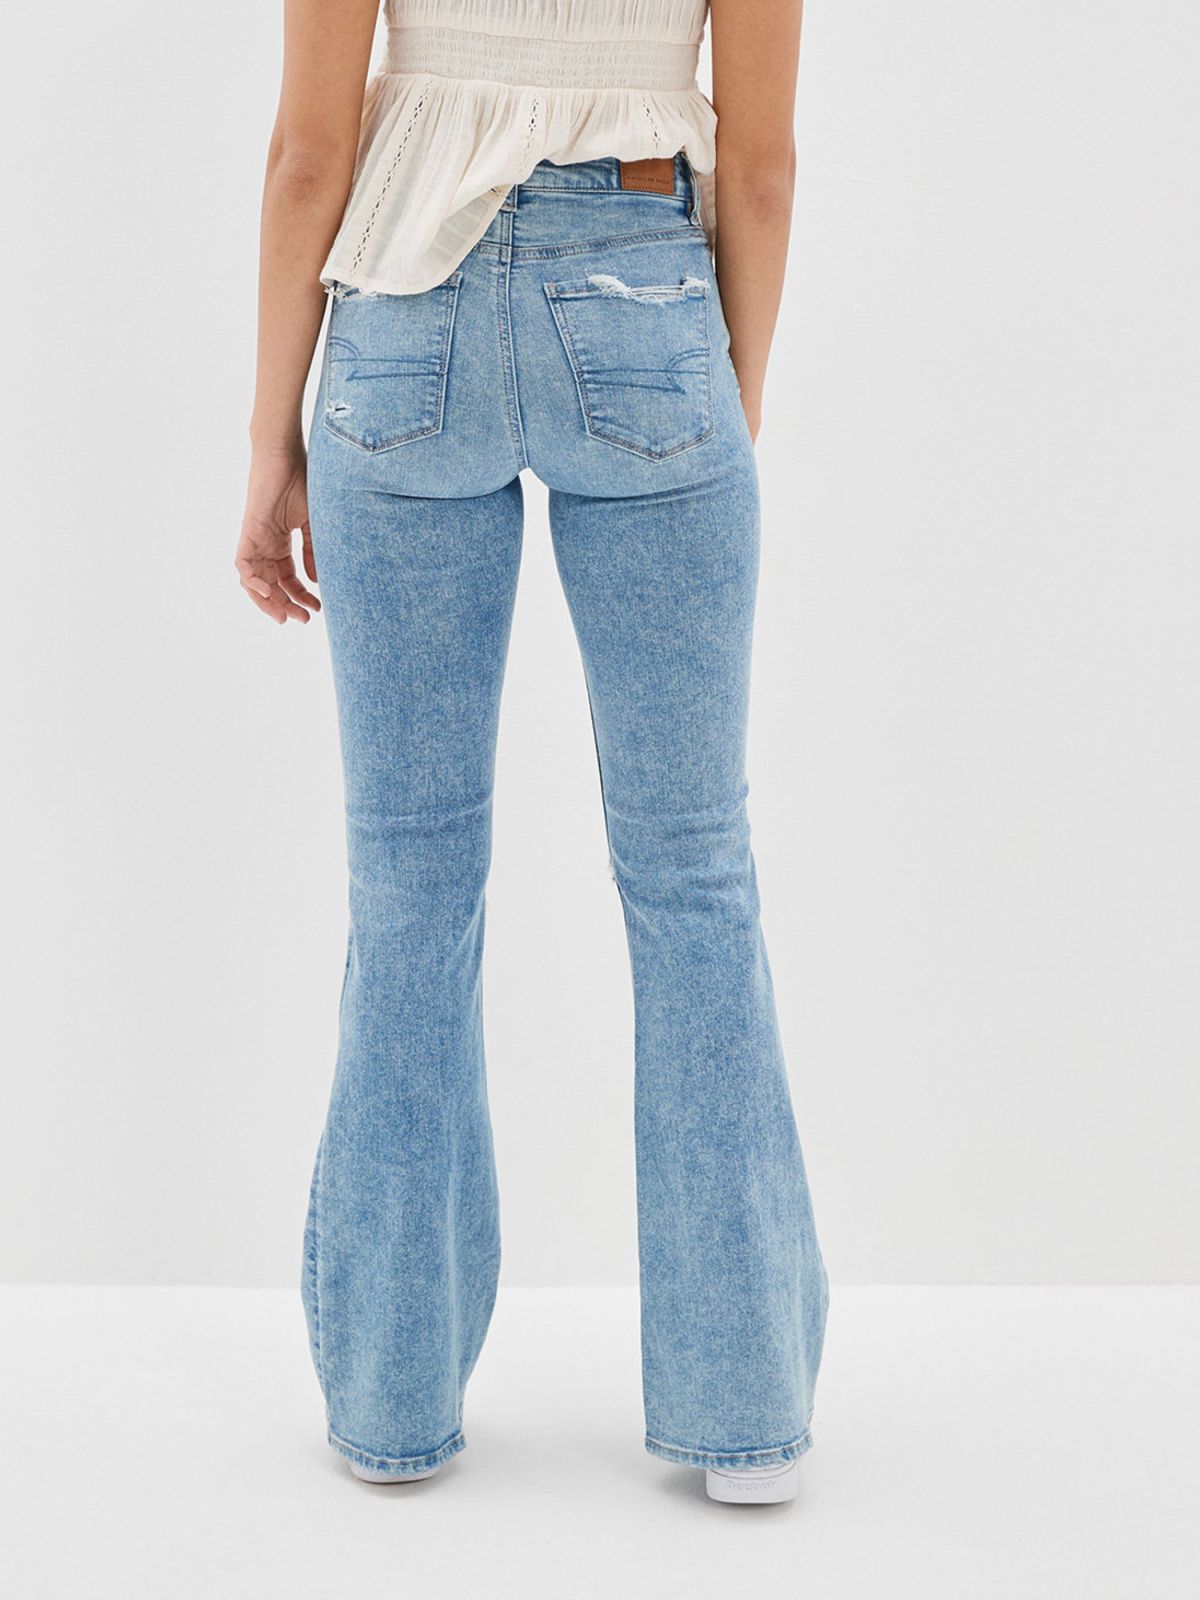  ג'ינס בגזרה מתרחבת עם קרעים Super hi-rise של AMERICAN EAGLE